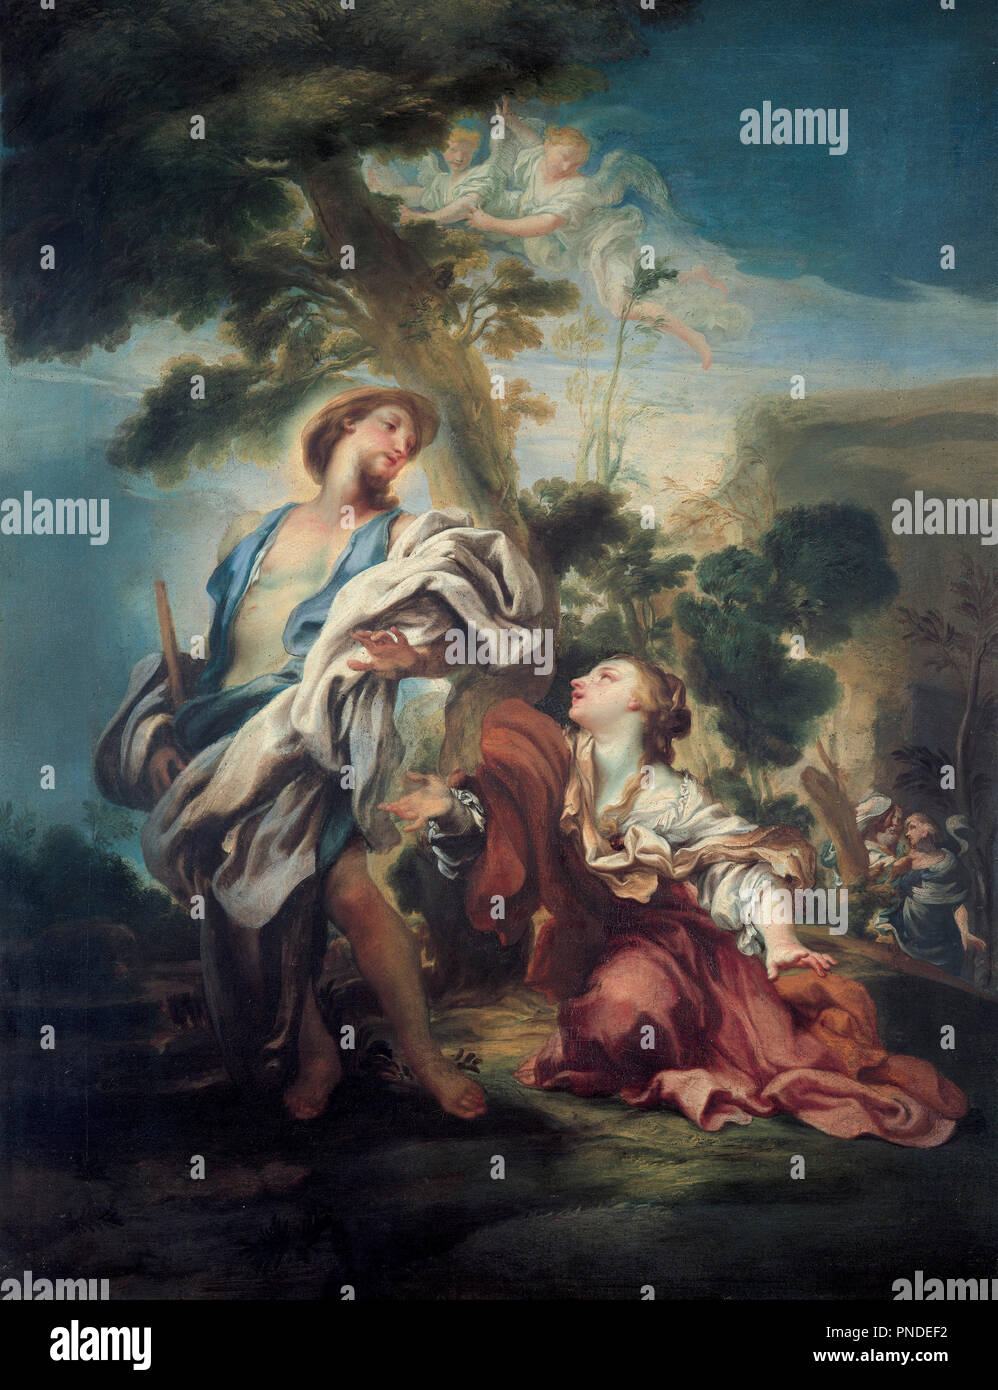 Noli Me Tangere. Date/Period: 1680. Painting. Height: 130 mm (5.11 in); Width: 100 mm (3.93 in). Author: GREGORIO DE FERRARI. Ferrari, Gregorio de. Stock Photo